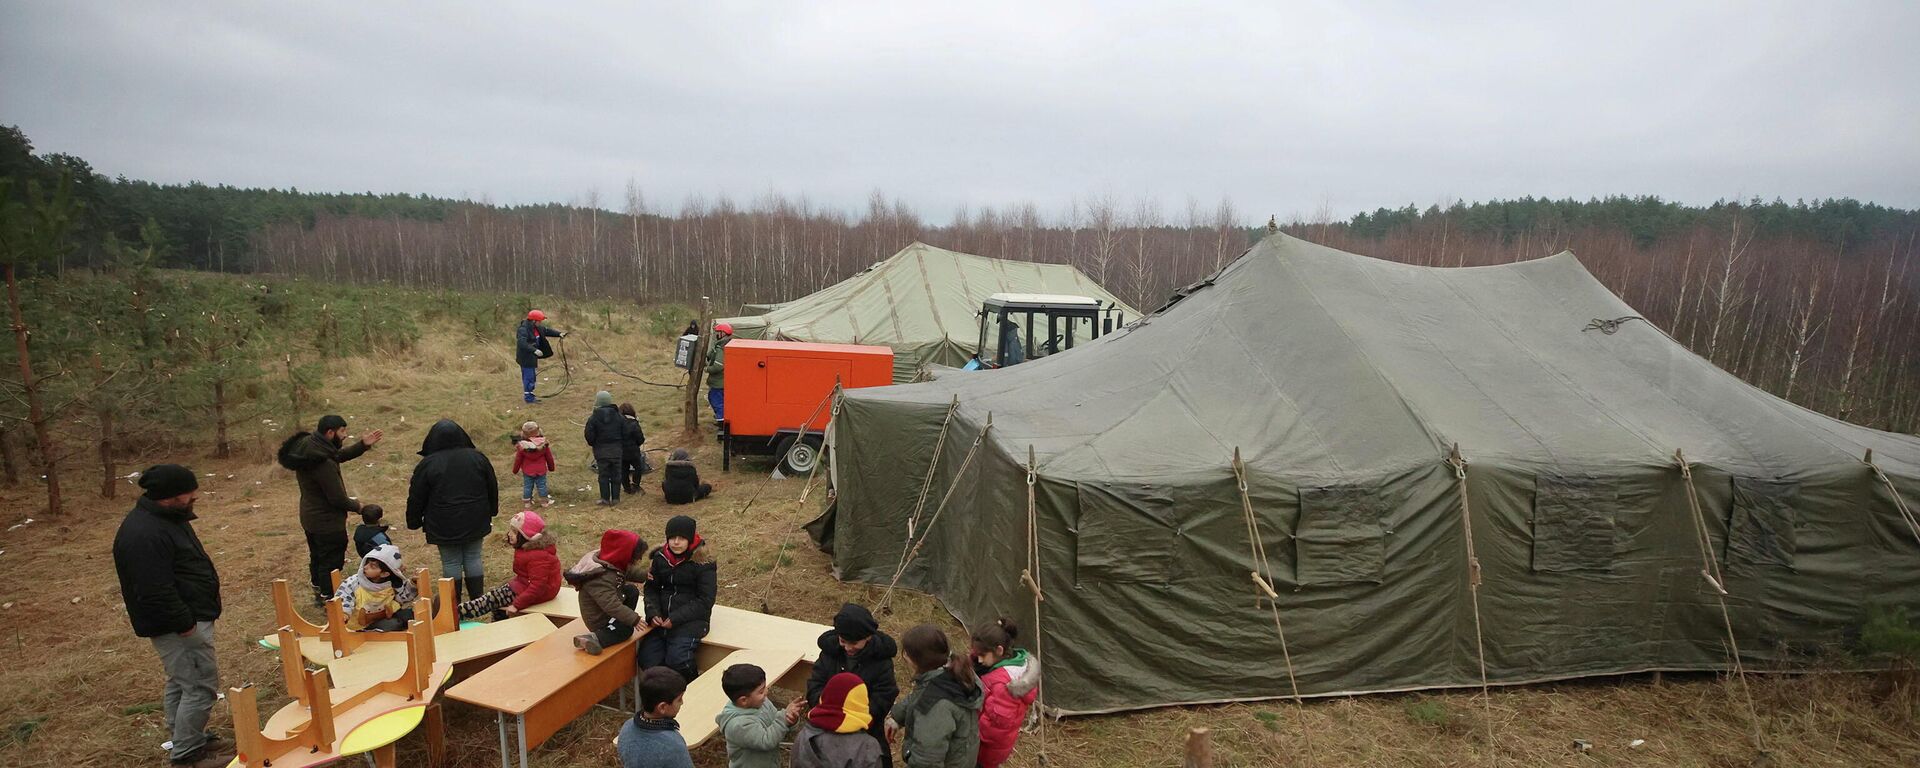 Las carpas instaladas por militares bielorrusos en un campamento improvisado para migrantes en la frontera bielorruso-polaca en la región de Grodno, Bielorrusia, 13 de noviembre de 2021 - Sputnik Mundo, 1920, 14.11.2021